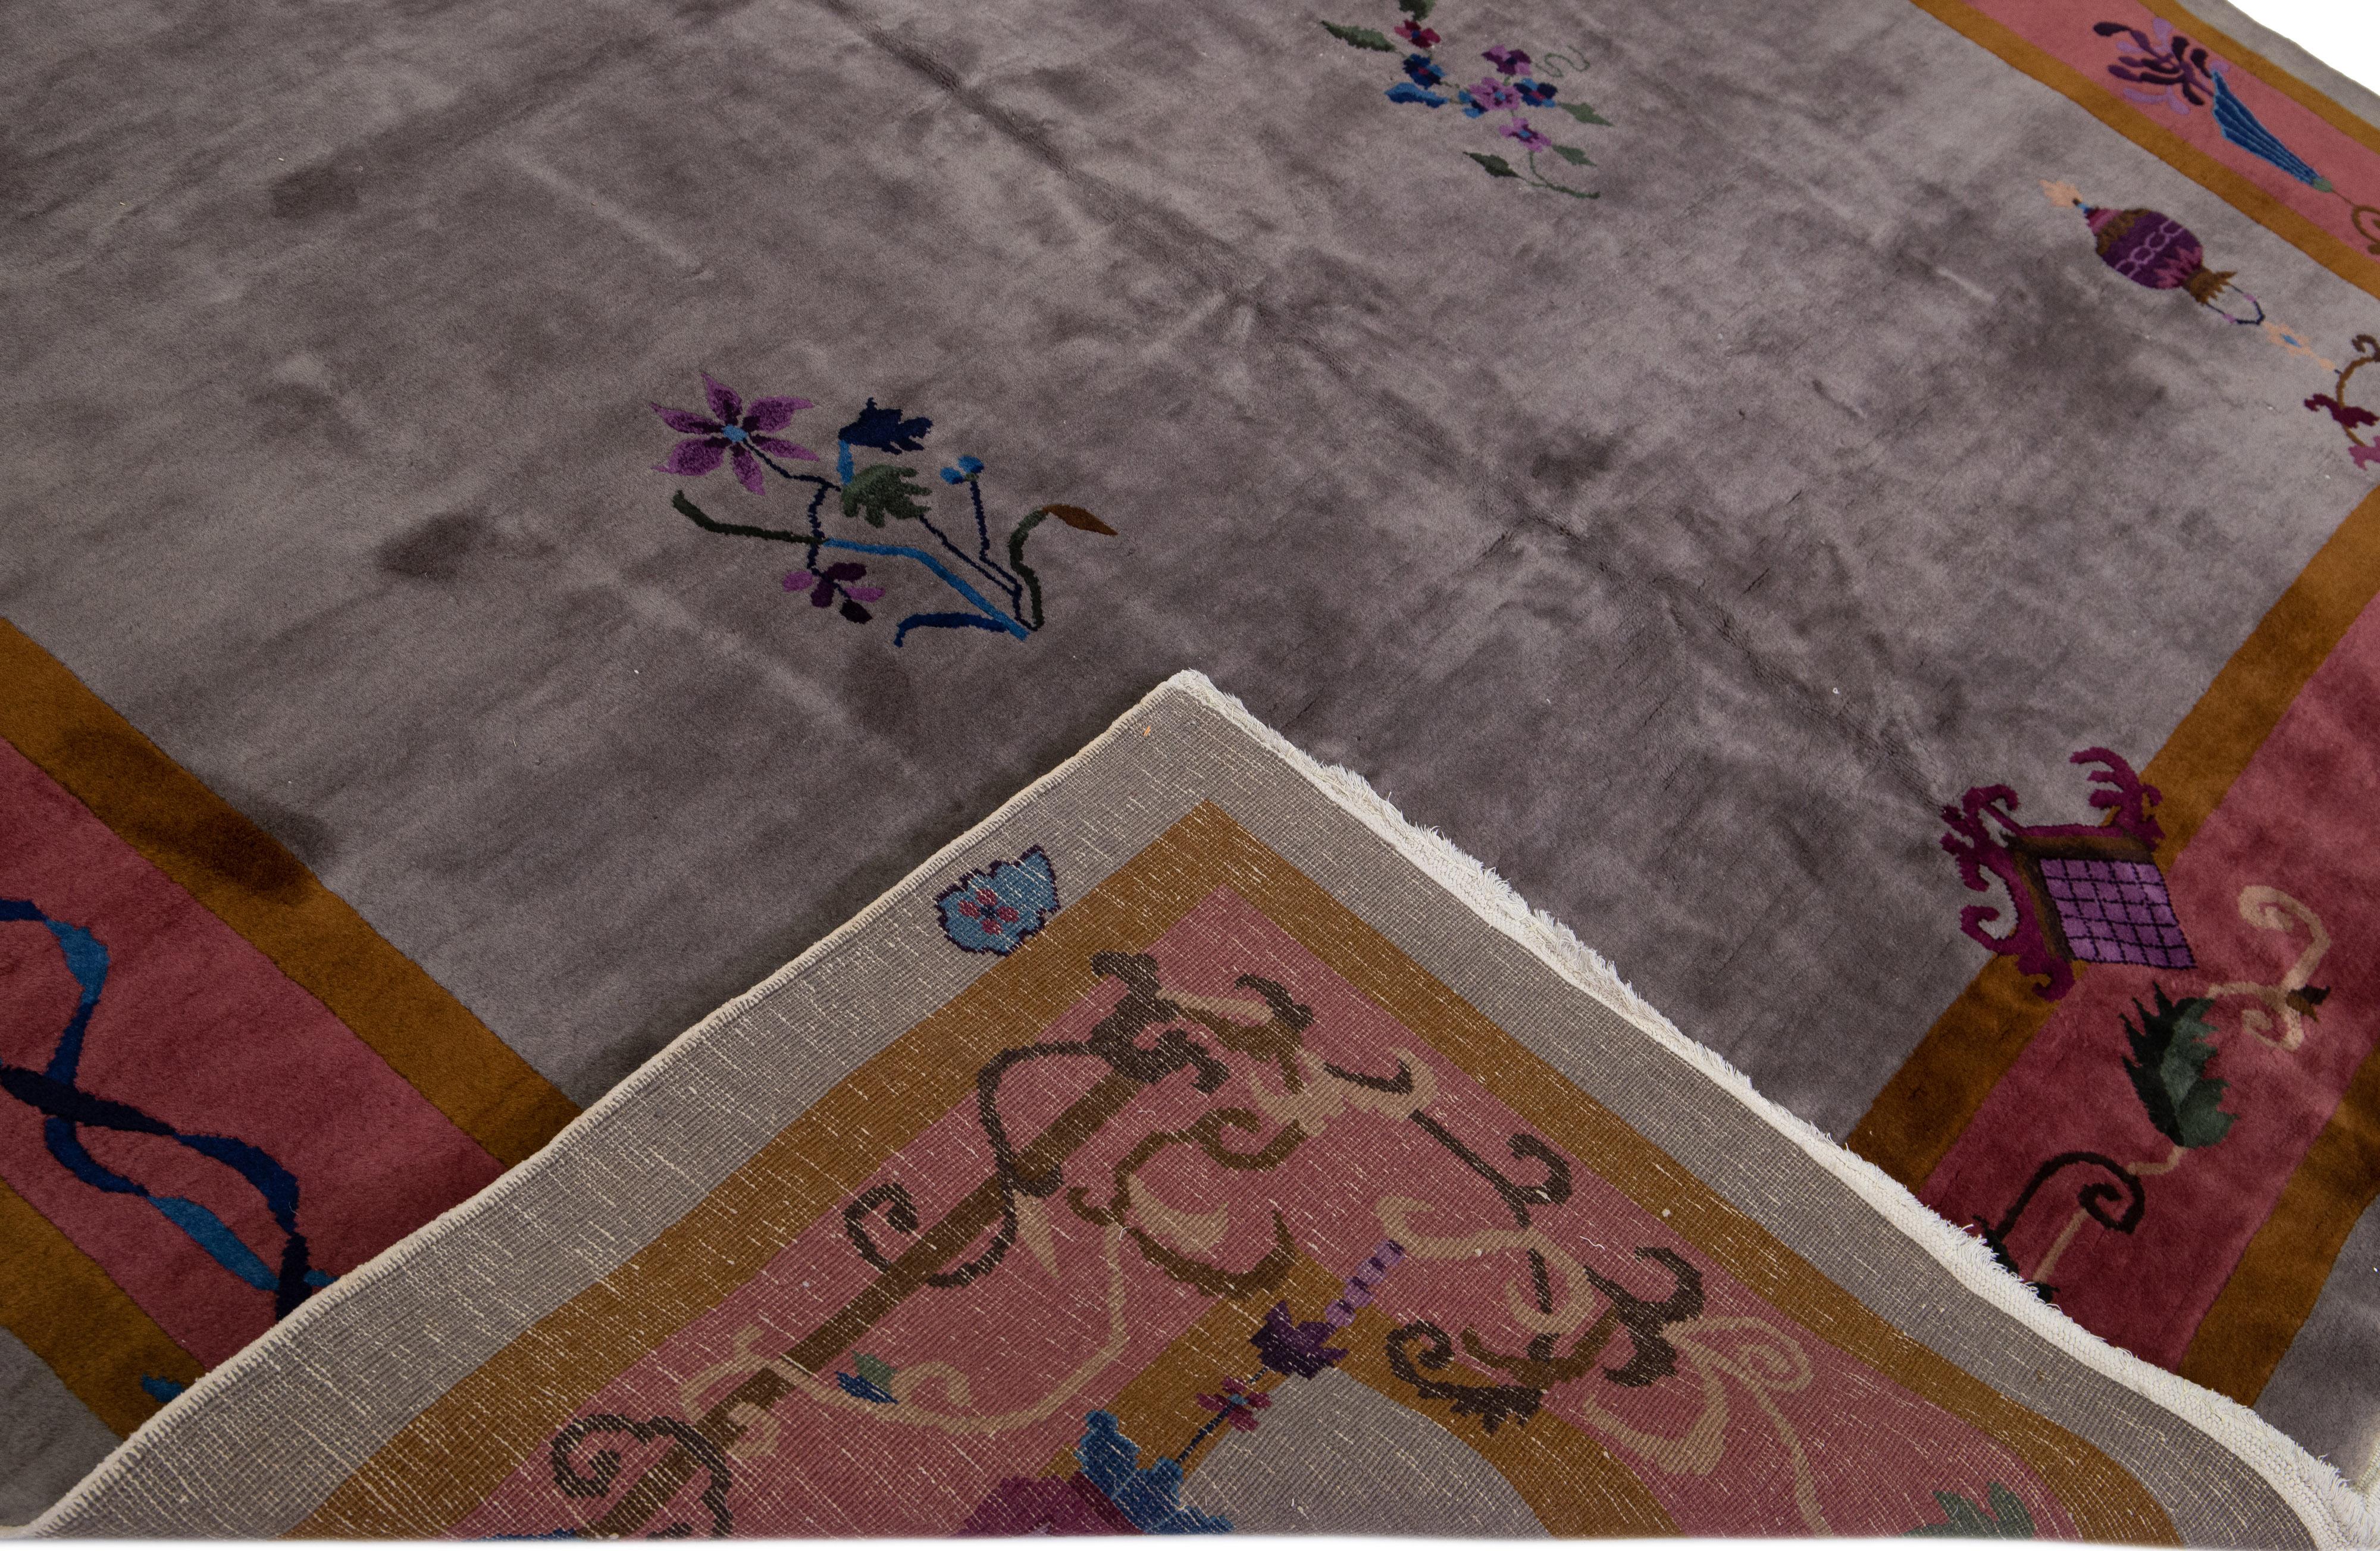 Schöne antike Art Deco handgeknüpften Wollteppich mit dem grauen Feld. Dieser chinesische Teppich hat einen weinroten und goldroten Rahmen mit mehrfarbigen Akzenten in einem wunderschönen traditionellen chinesischen Blumenmuster. 

Dieser Teppich